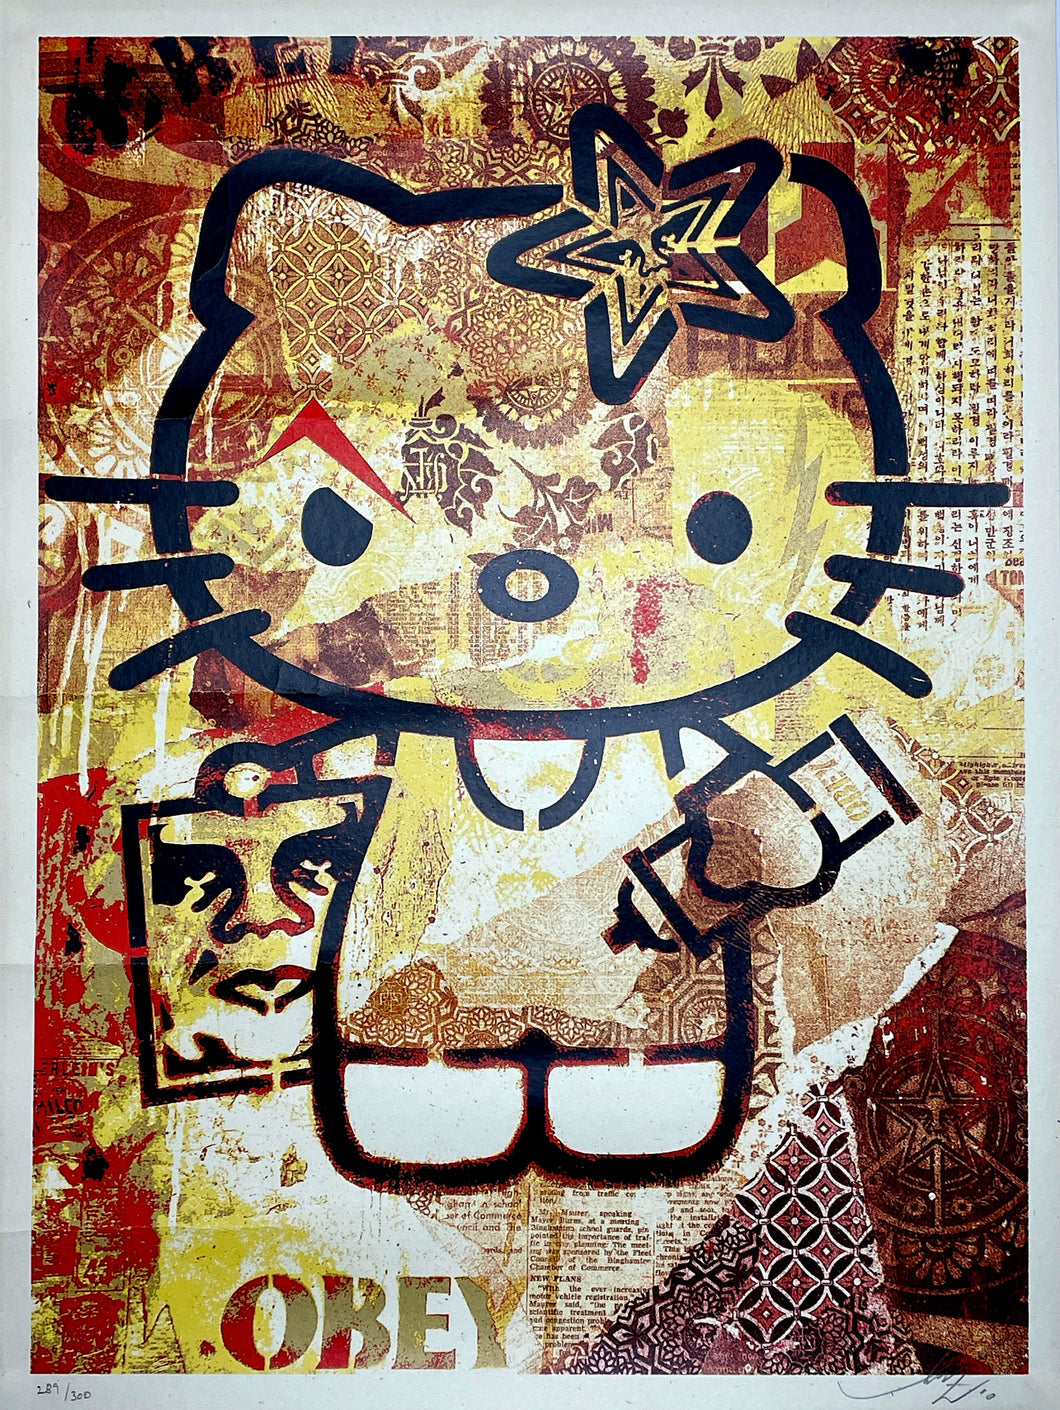 Hello Kitty - Happy Poster - 22.375' x 34